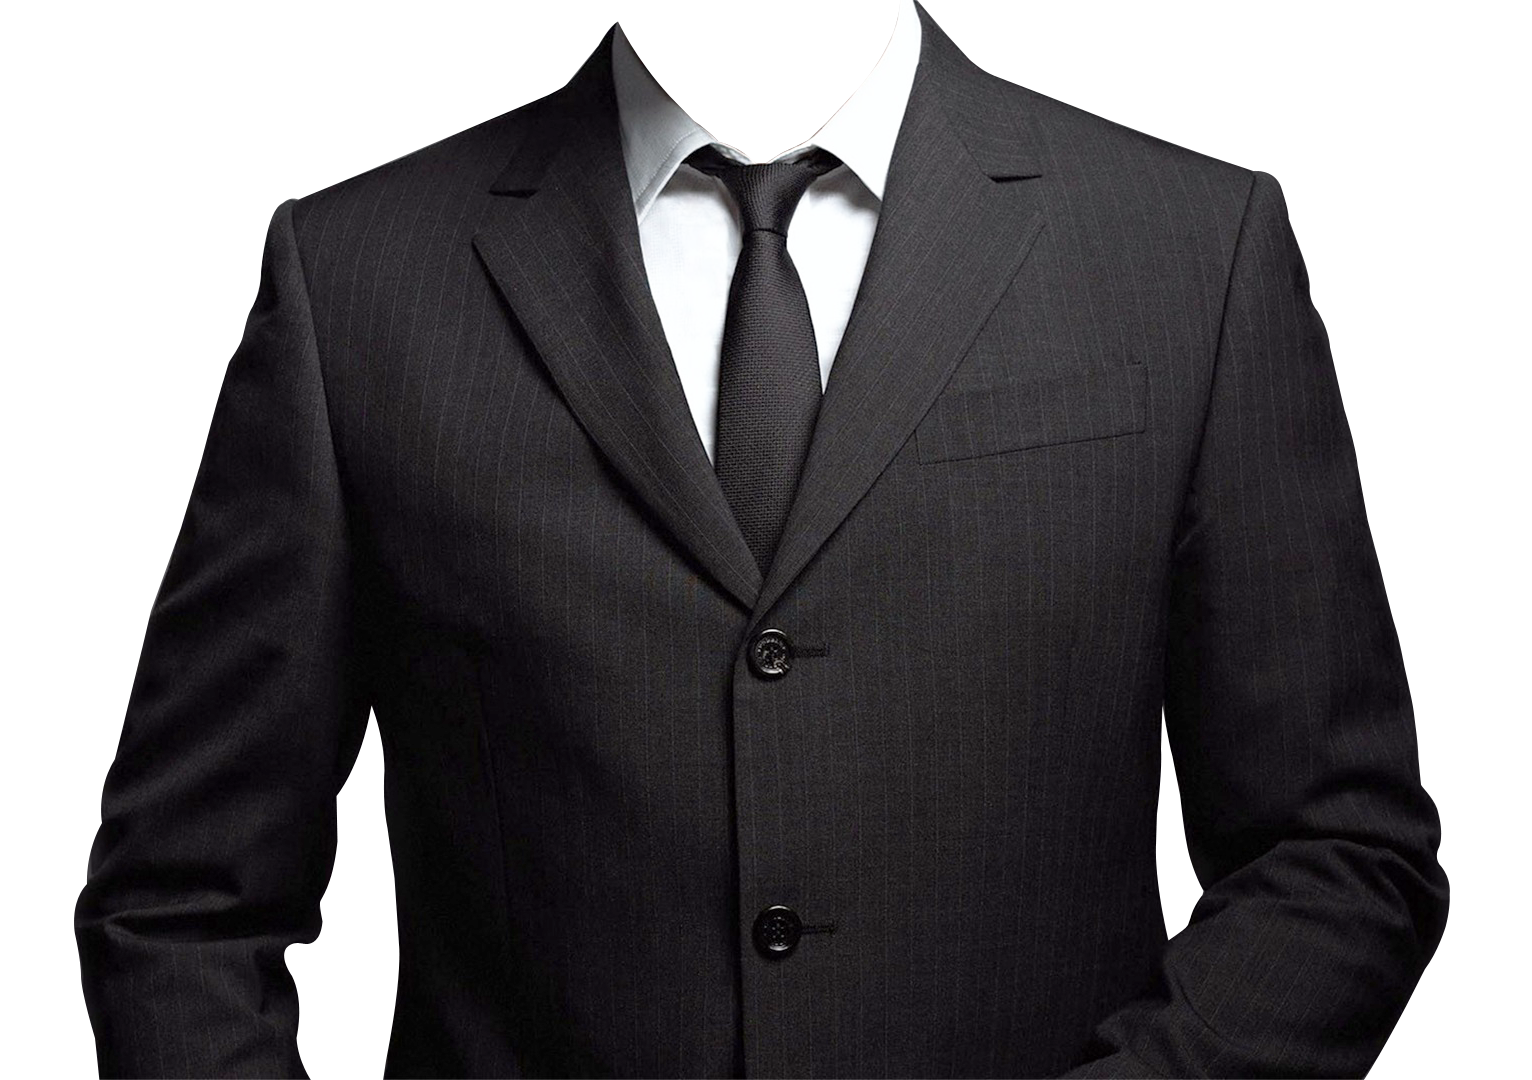 Suit Png Transparent Image - Coat, Transparent background PNG HD thumbnail